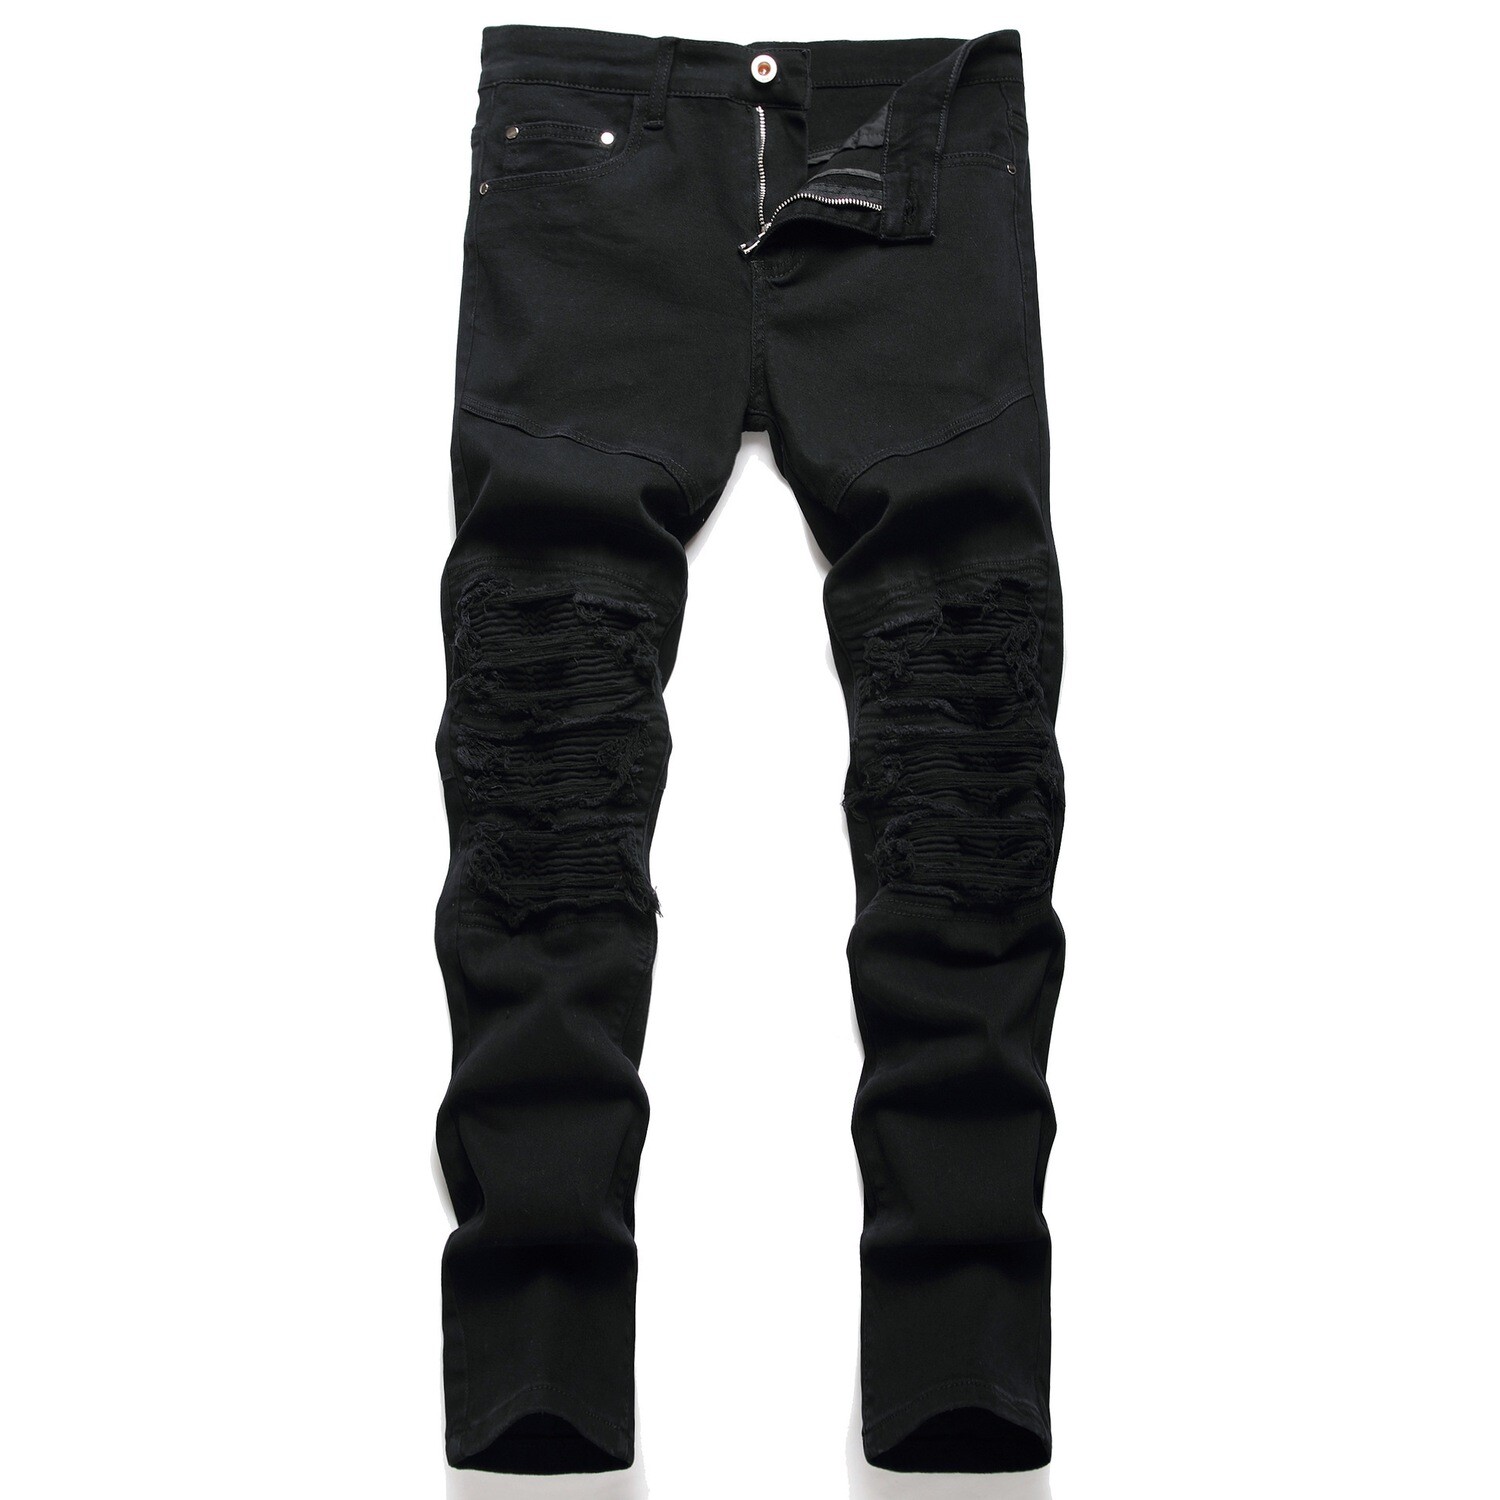 Men's Black Motorcycle Pencil Slim Jeans